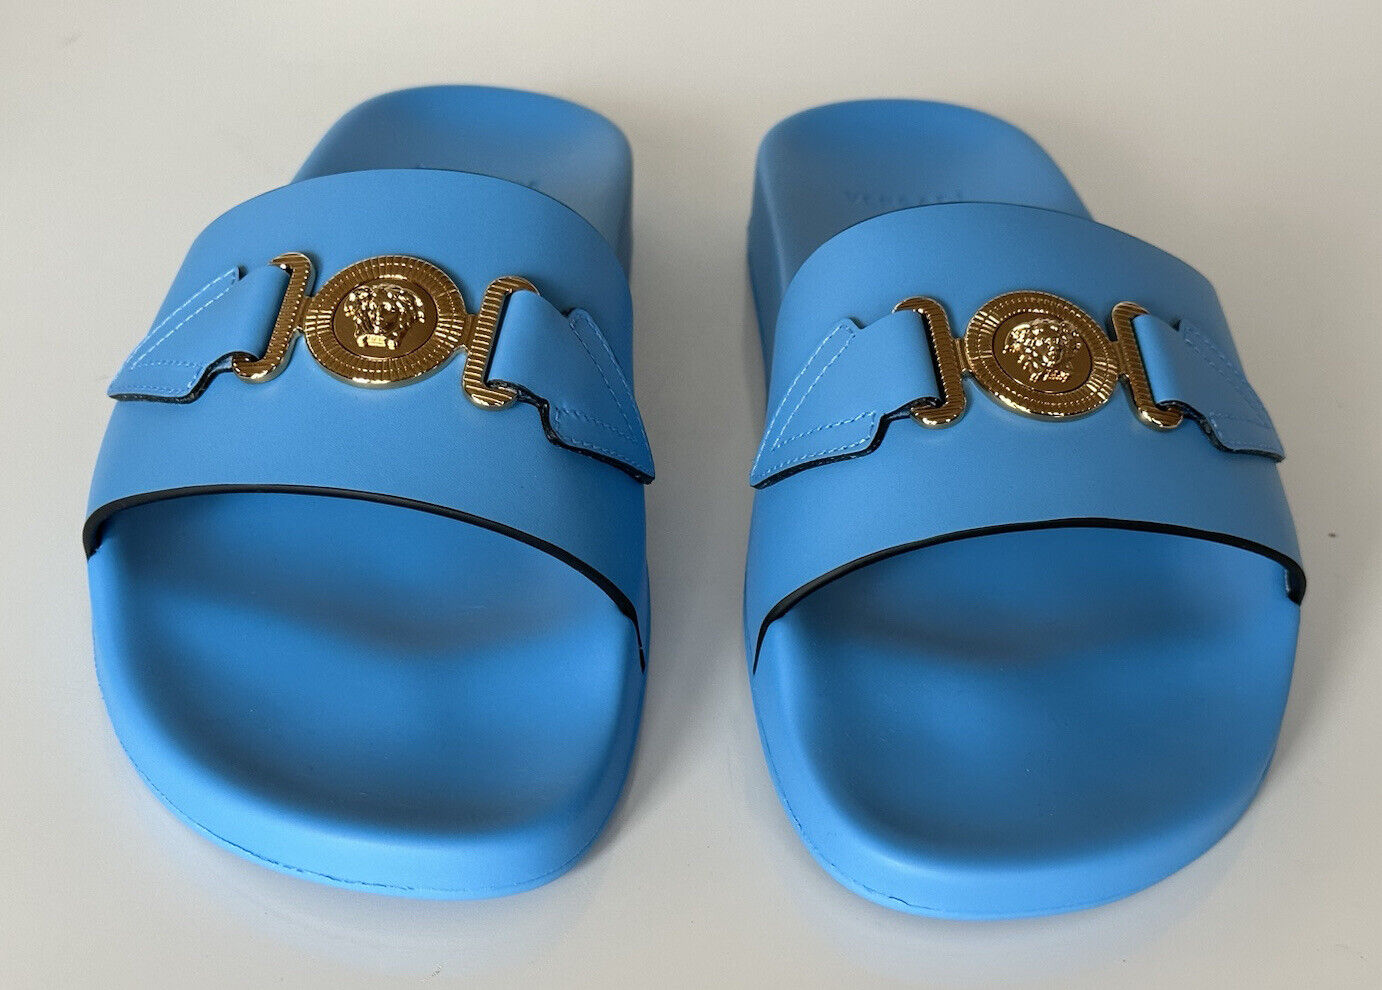 NIB 575 долларов США Versace Gold Medusa Кожаные/резиновые сандалии Синие 10 США (43) 1004983 IT